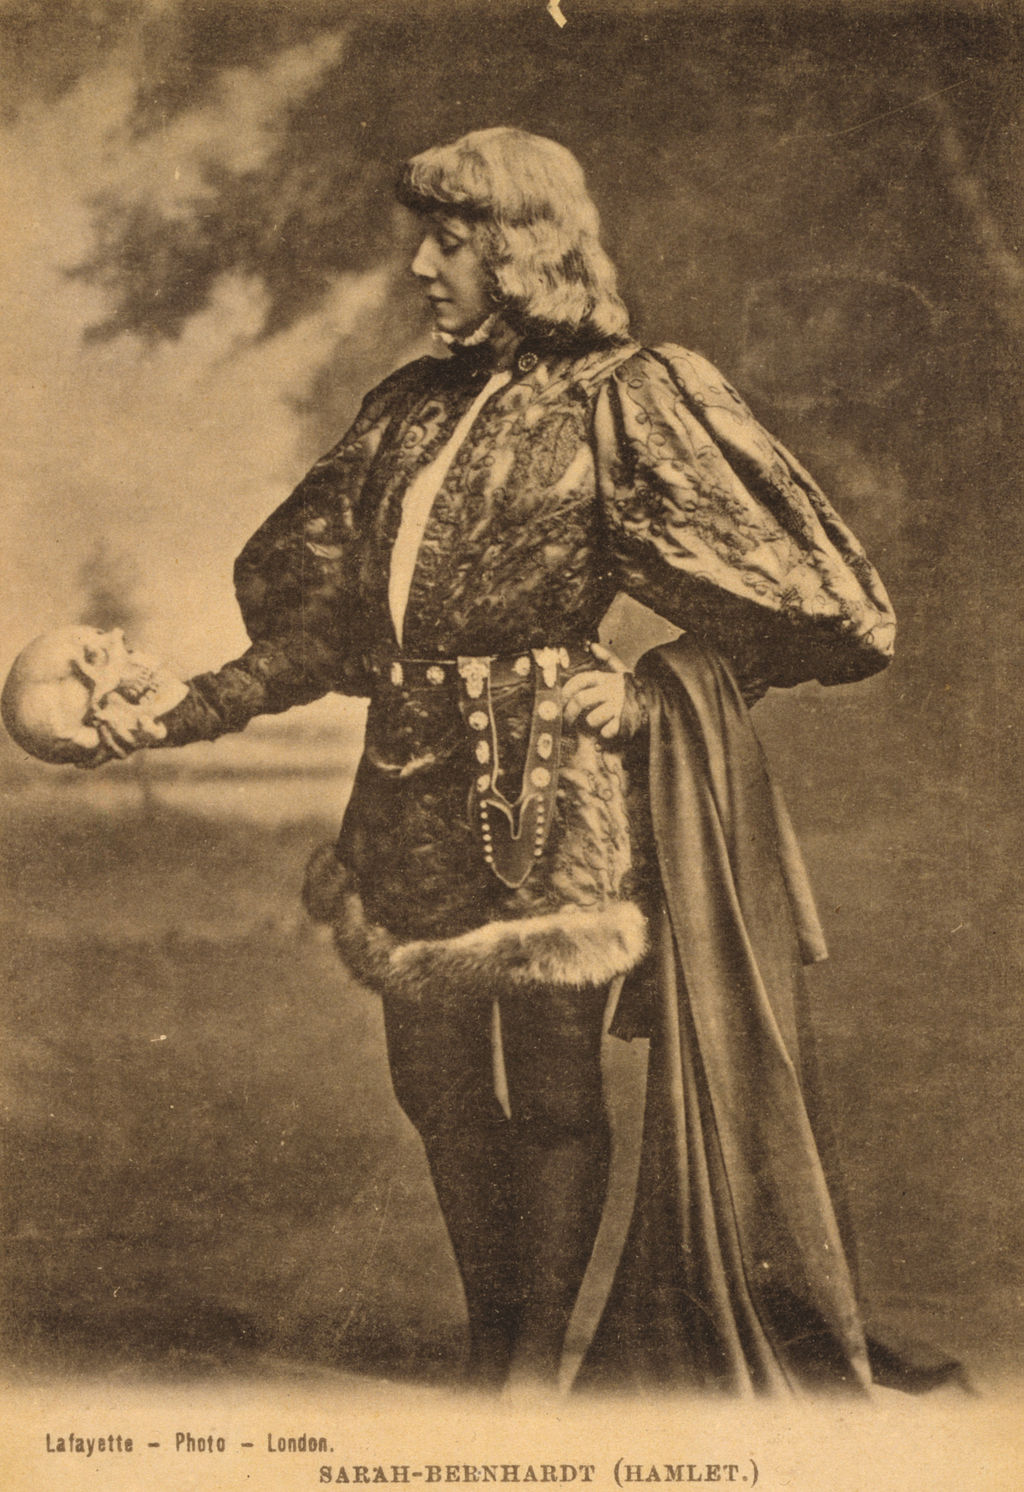 Portrait of Sarah Bernhardt as Hamlet. Quelle: Wikimedia Commons — By Lafayette Photo London